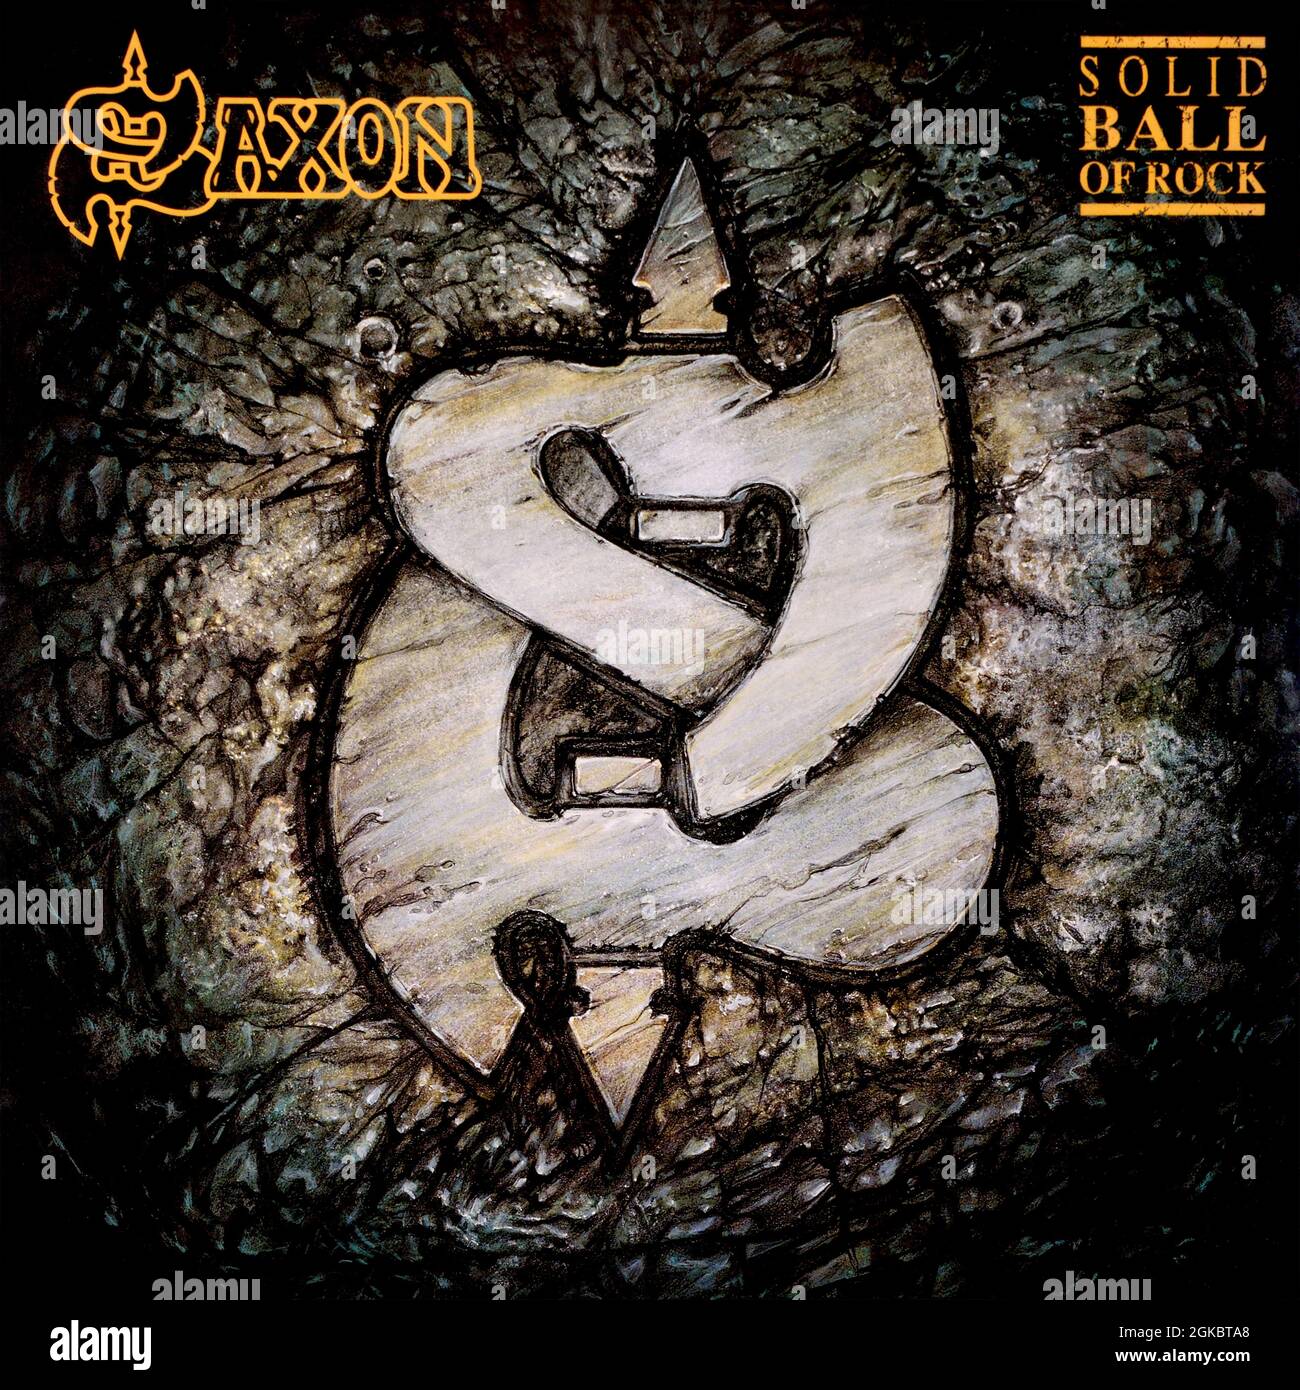 Saxon - couverture originale de l'album en vinyle - Solid ball of Rock - 1990 Banque D'Images